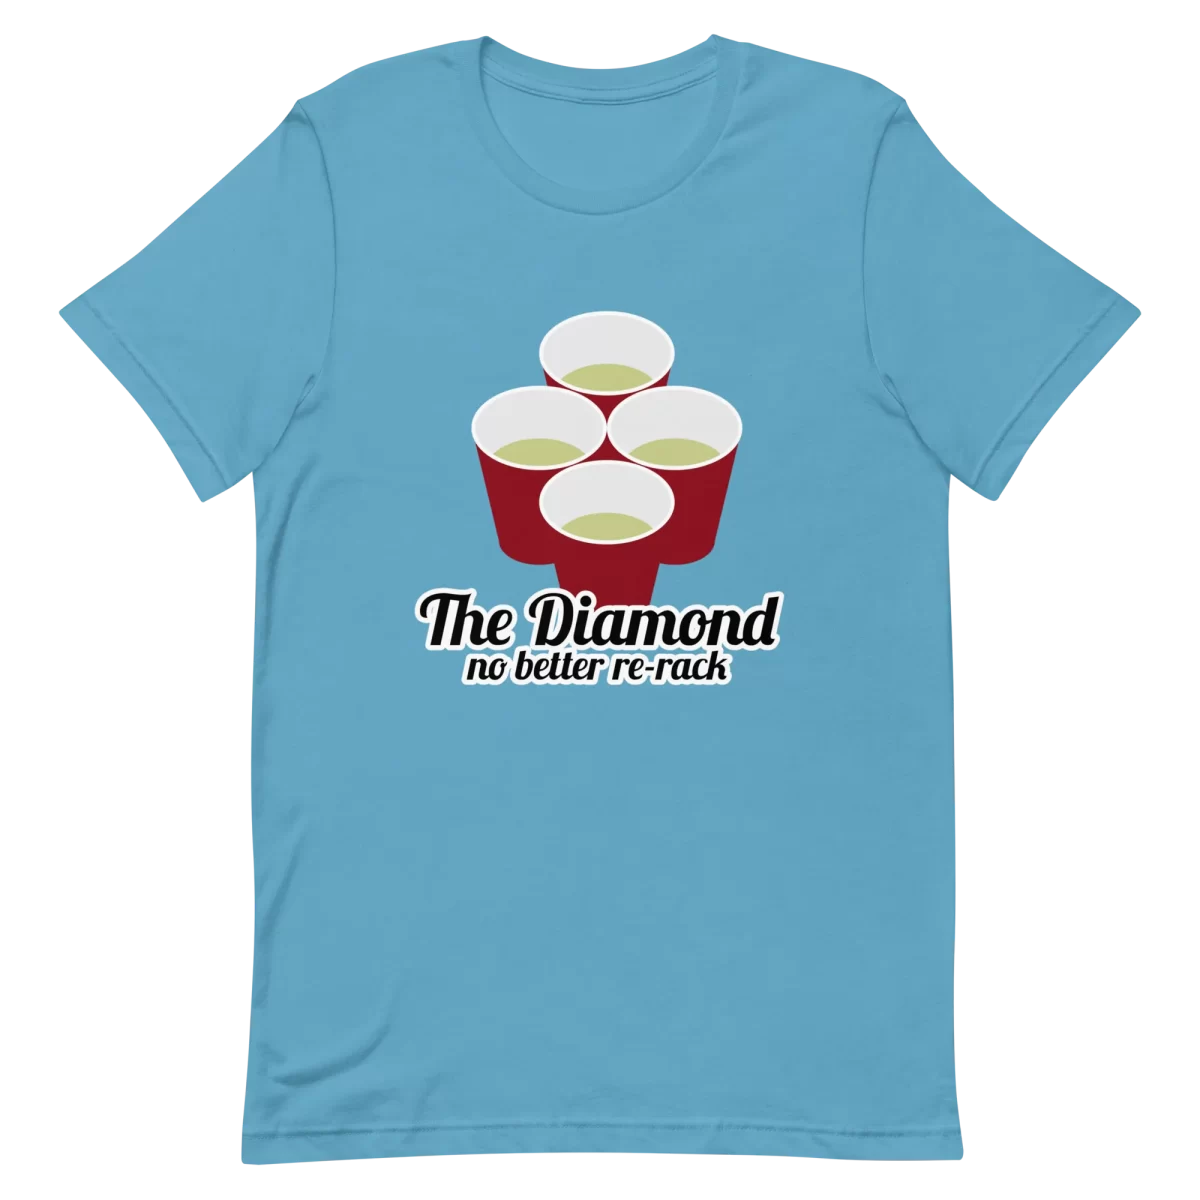 Unisex T-Shirt - The Diamond No Better Re-Rank - Ocean Blue